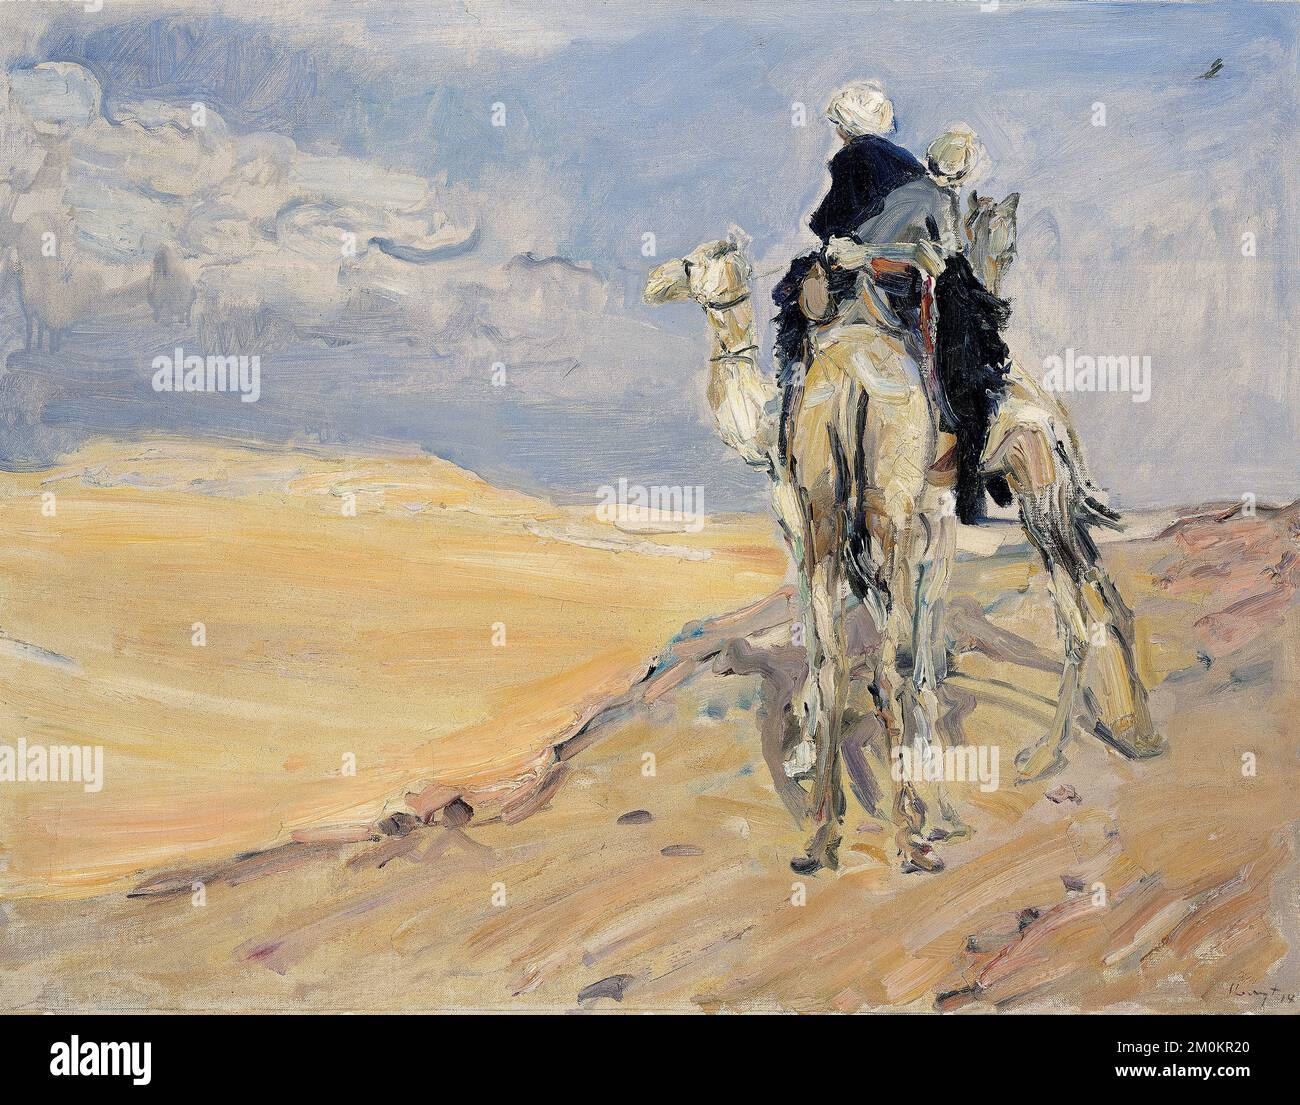 Max Slevogt, tempête de sable dans le désert libyen, peinture à l'huile sur toile, 1914 Banque D'Images